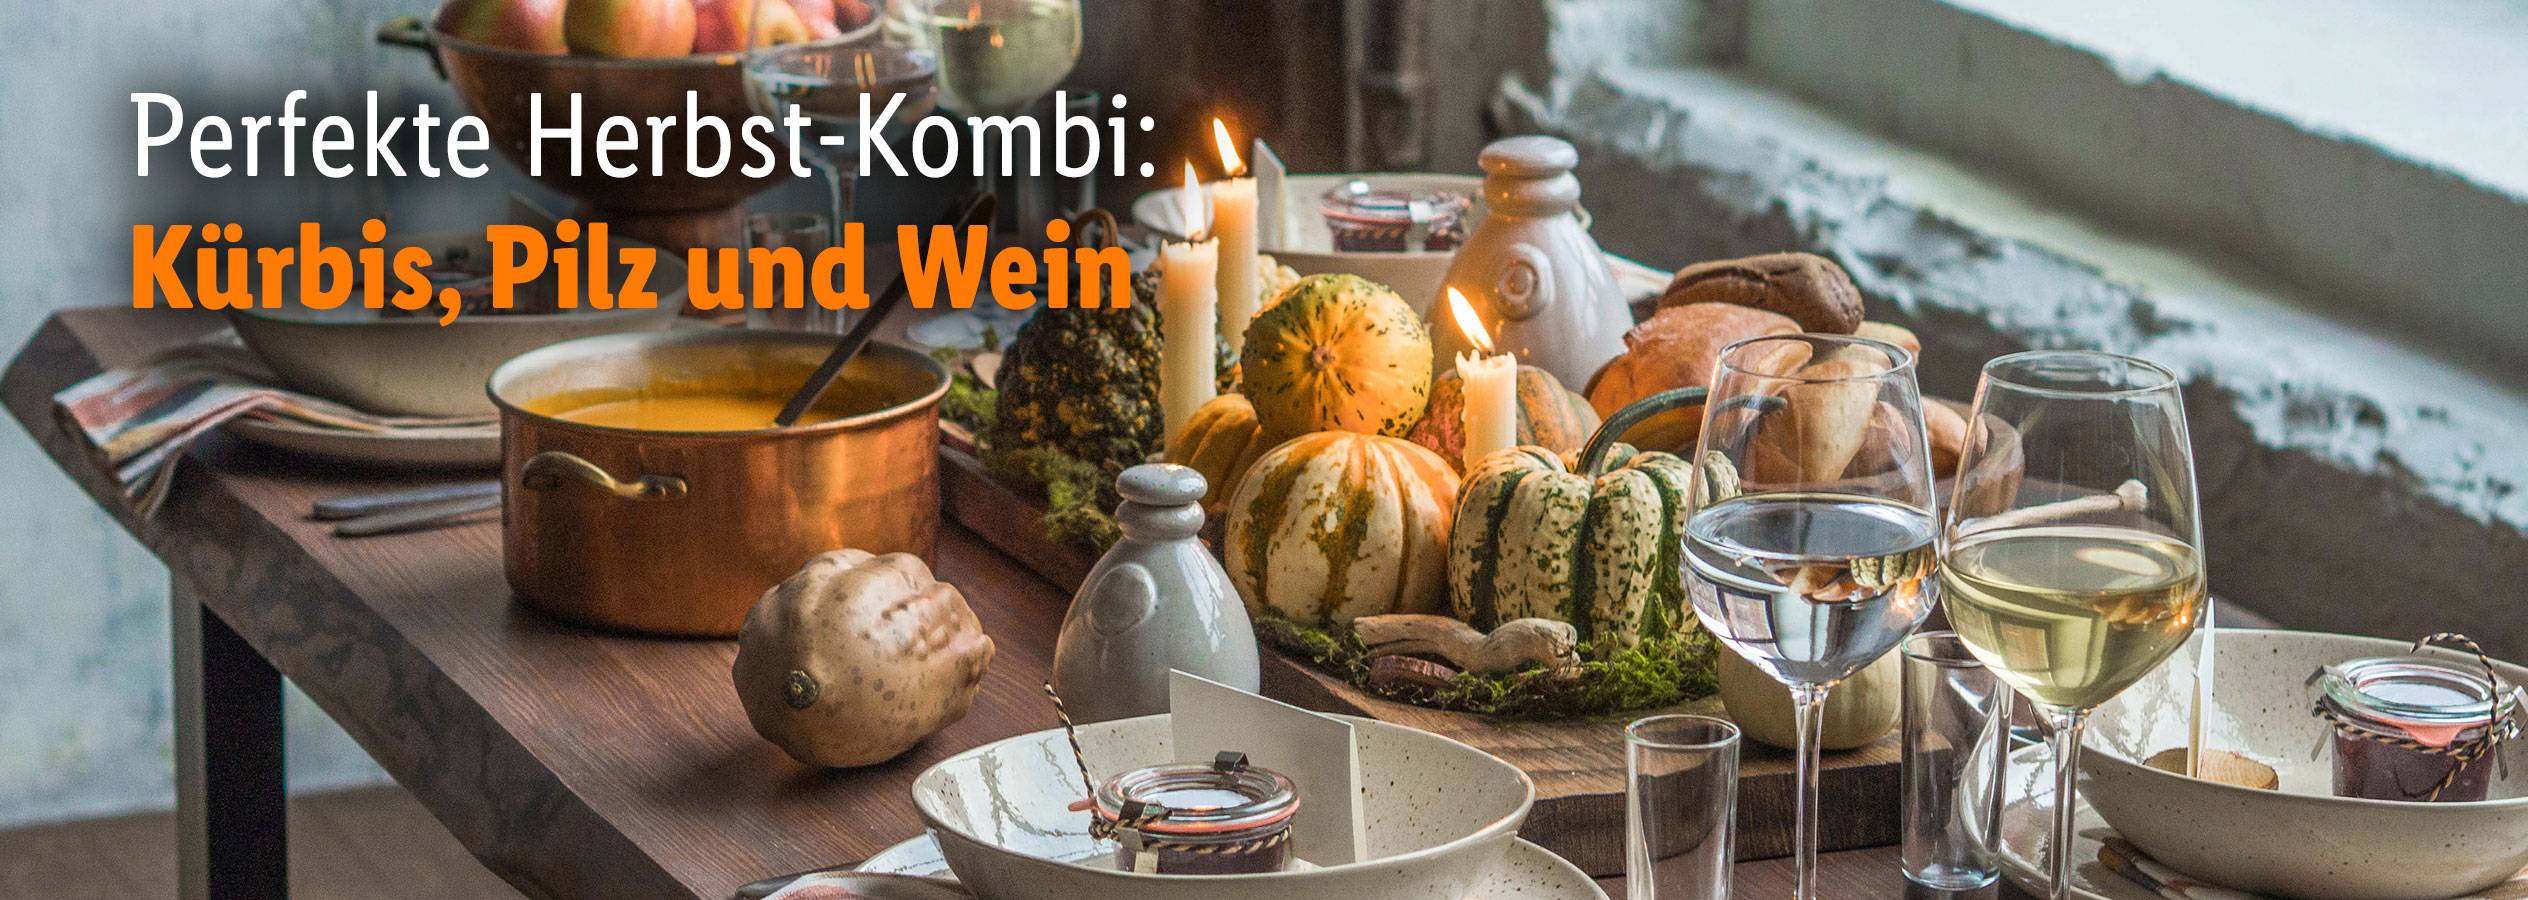 Perfekte Herbst-Kombi: Kürbis, Pilz und Wein | Weißweine